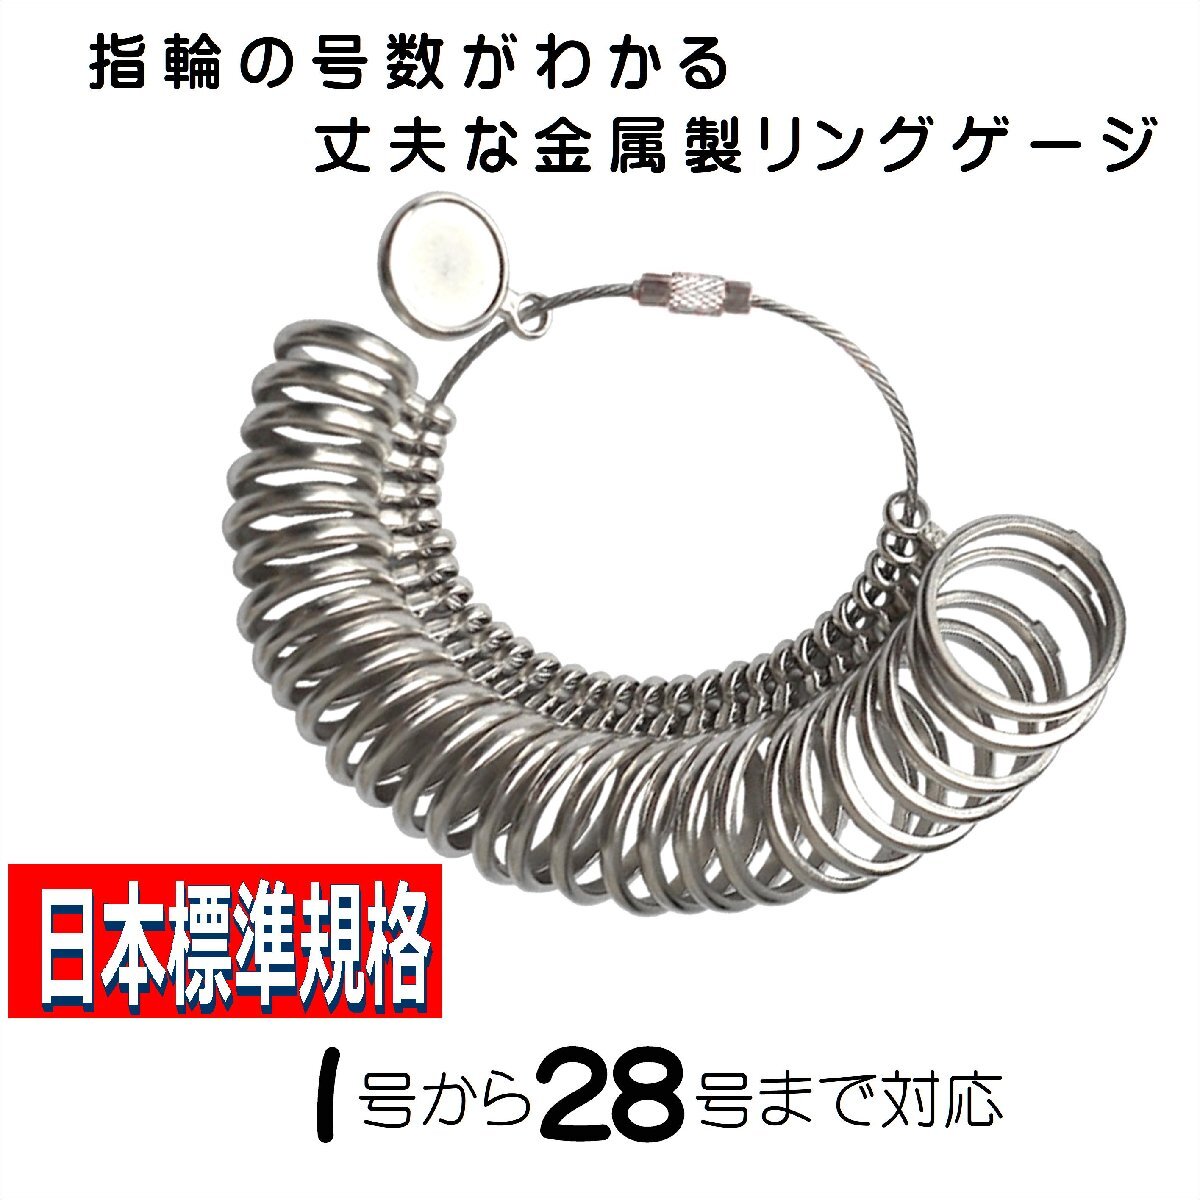 【送料無料】リングゲージ 丈夫な金属製 指のサイズを測る リングサイズゲージ 日本標準規格 指輪 号数 計測 1号から28号まで_画像1